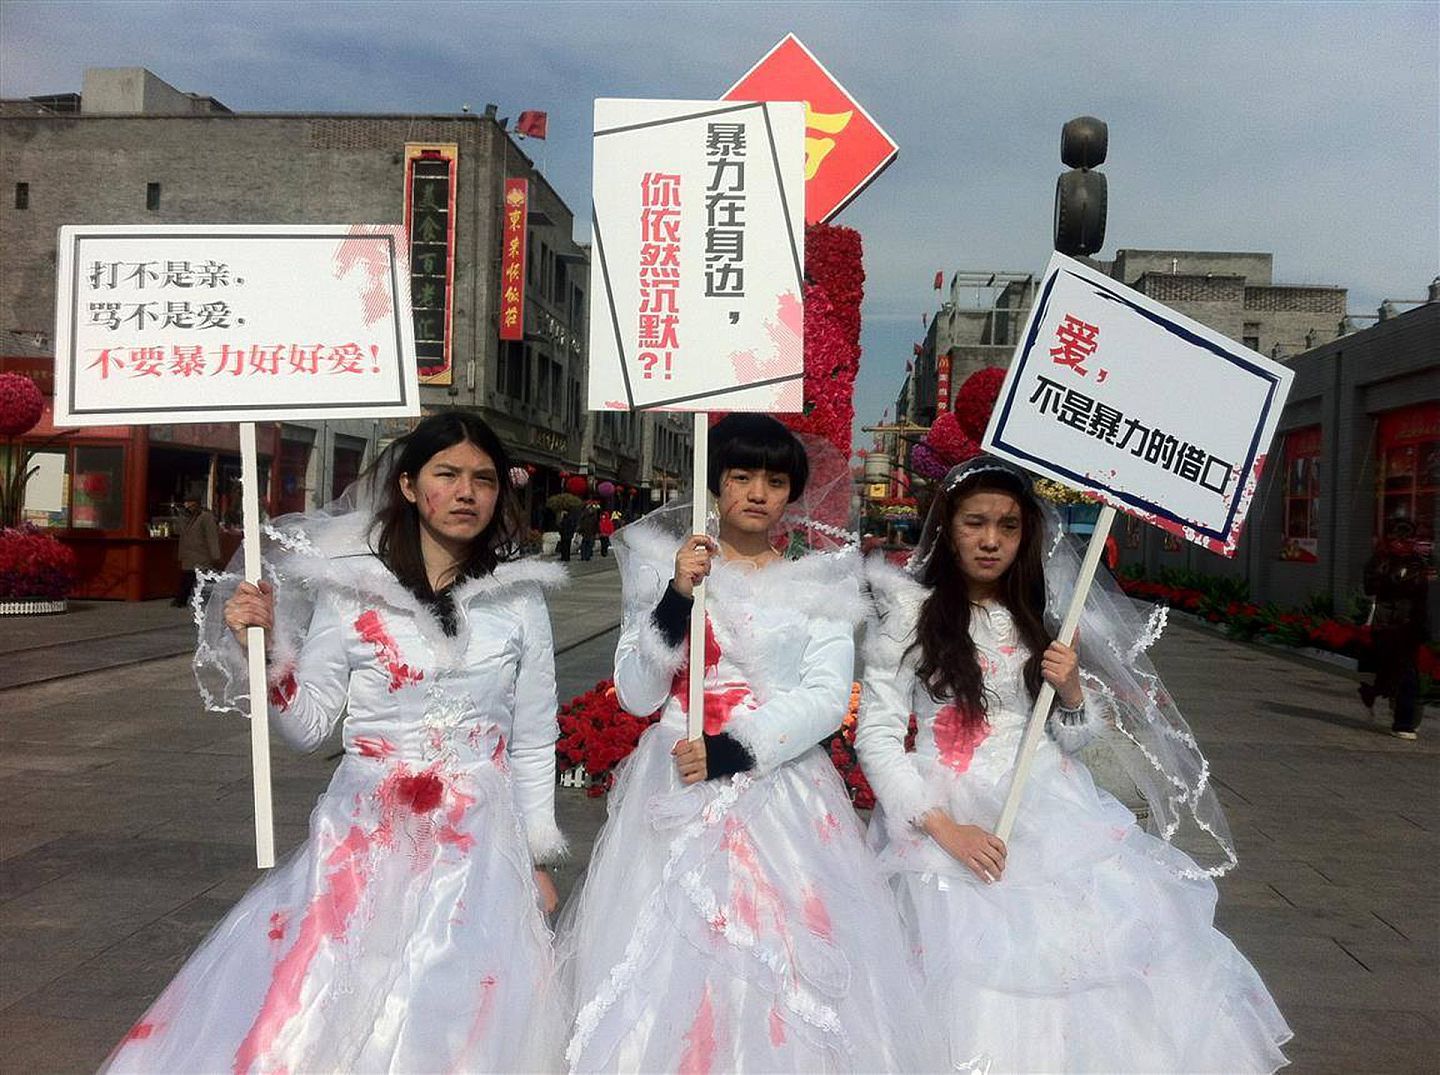 在中国，家庭暴力酿成的恶性事件并不罕见。图为2012年，三名女子在北京市街头穿上血淋淋的婚纱，希望社会关注家庭暴力受害者。(Facebook@Free Chinese Feminists)